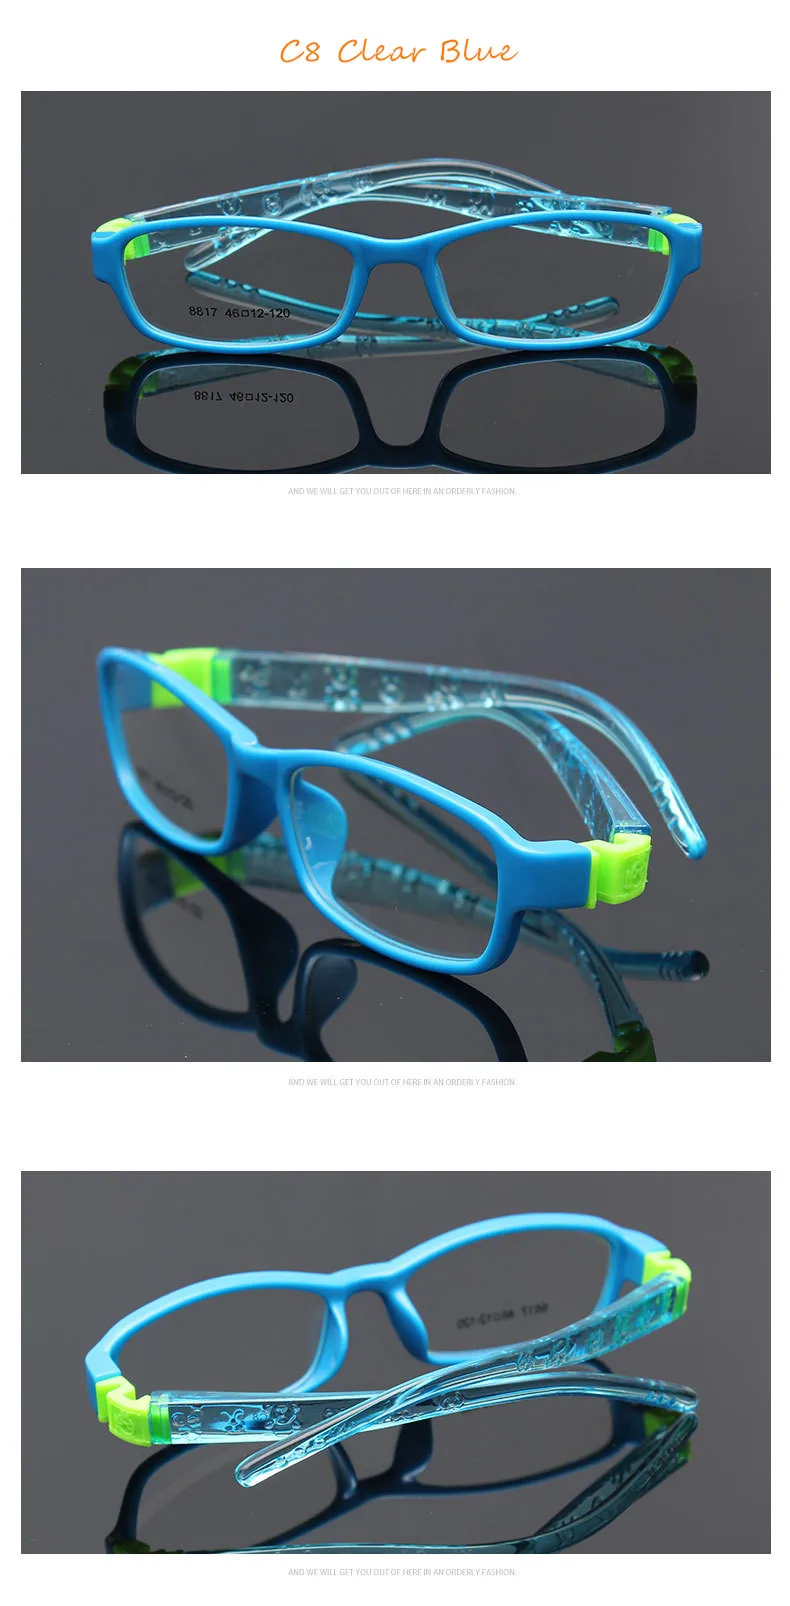 Гнущиеся без винта Детские рамки очки мальчик ребенок очки гибкие Детские рамки очки TR Оптическое стекло 8817